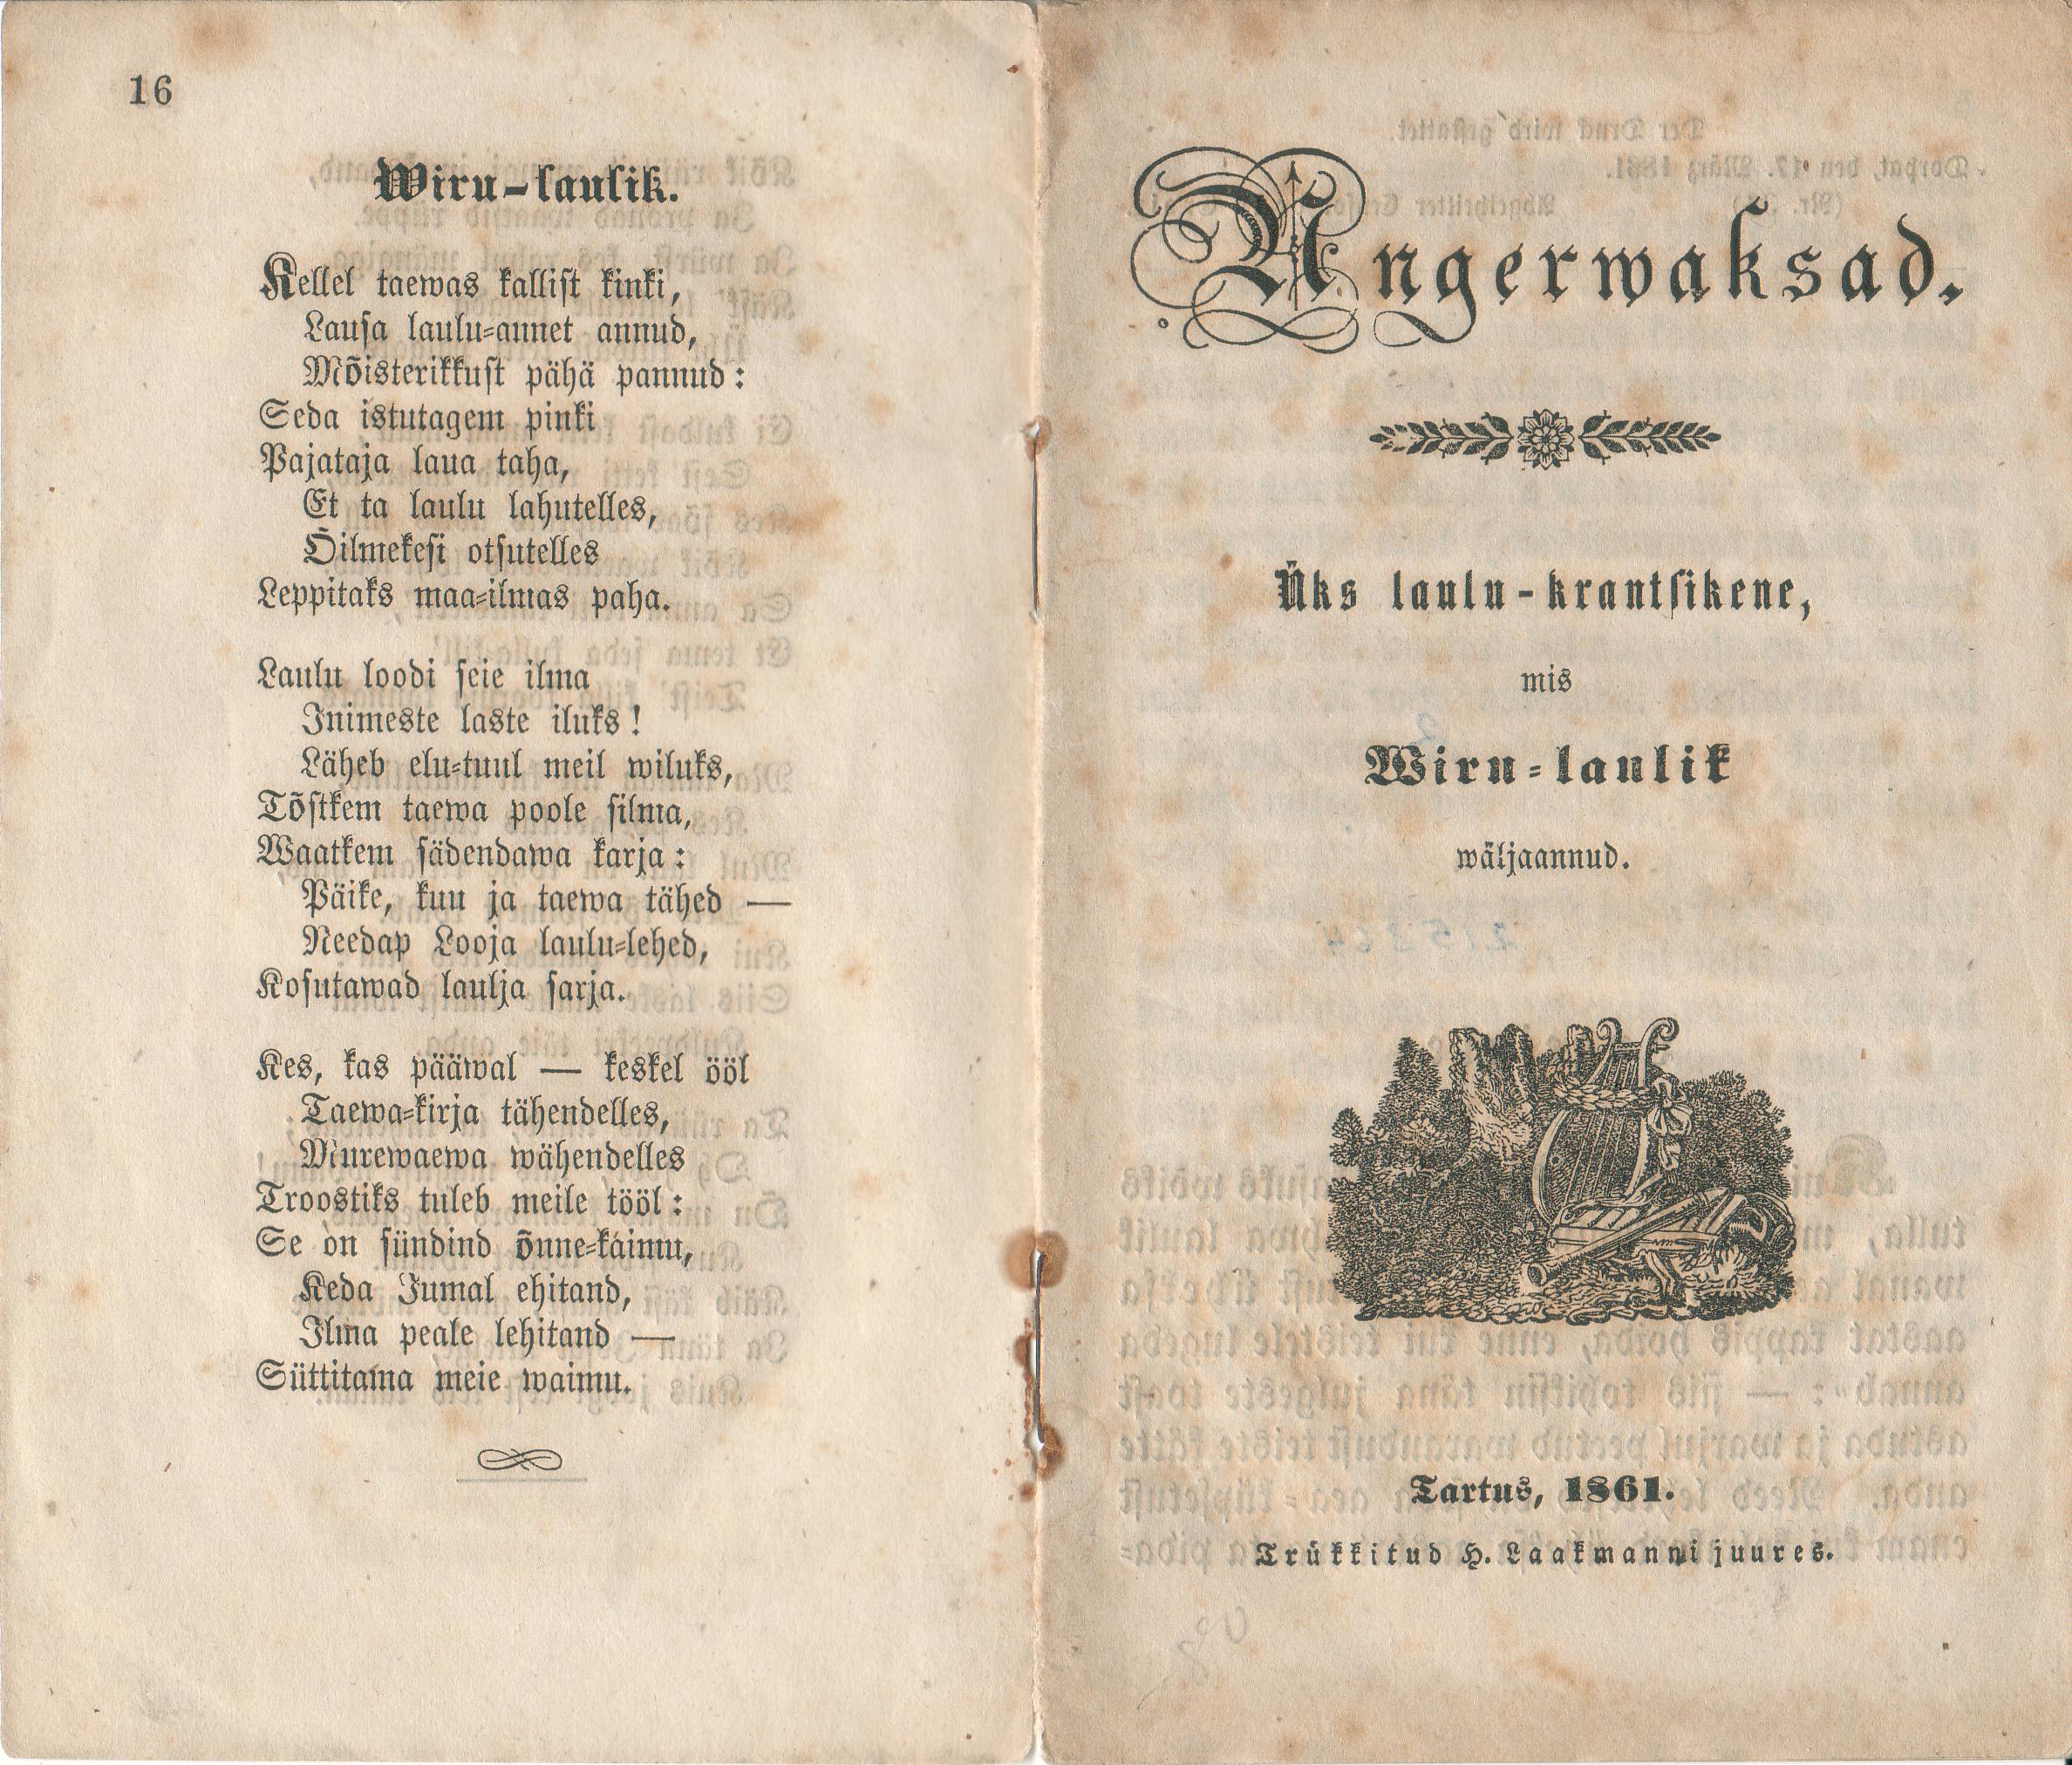 Angerwaksad (1861) | 1. (16) Титульный лист